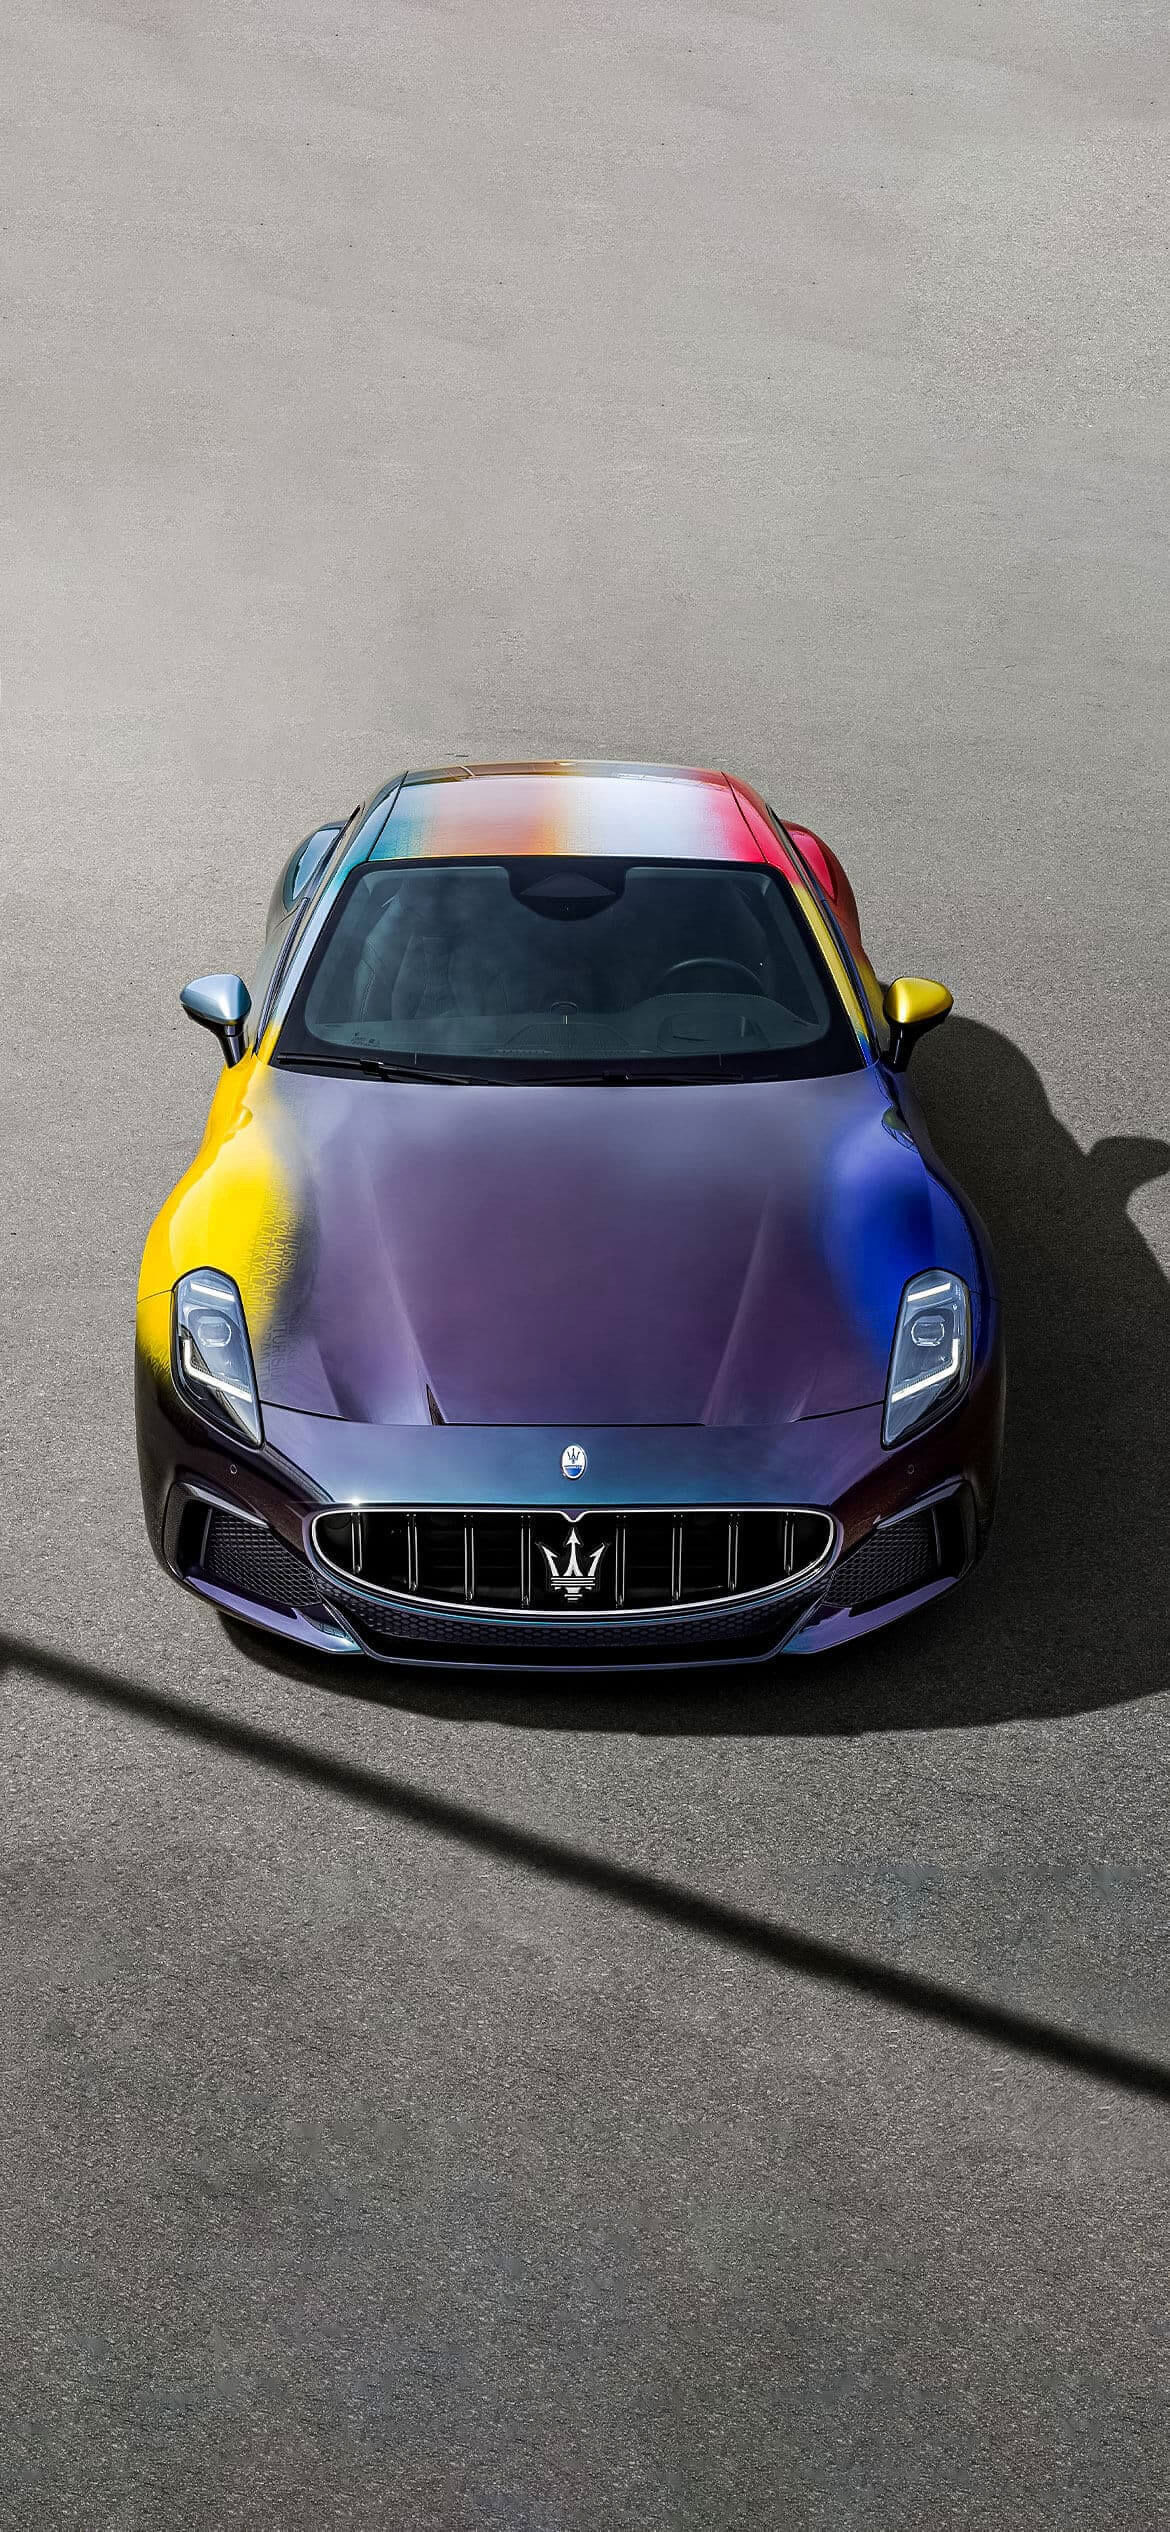 Maserati_One-Off_Prisma-hero-mobile